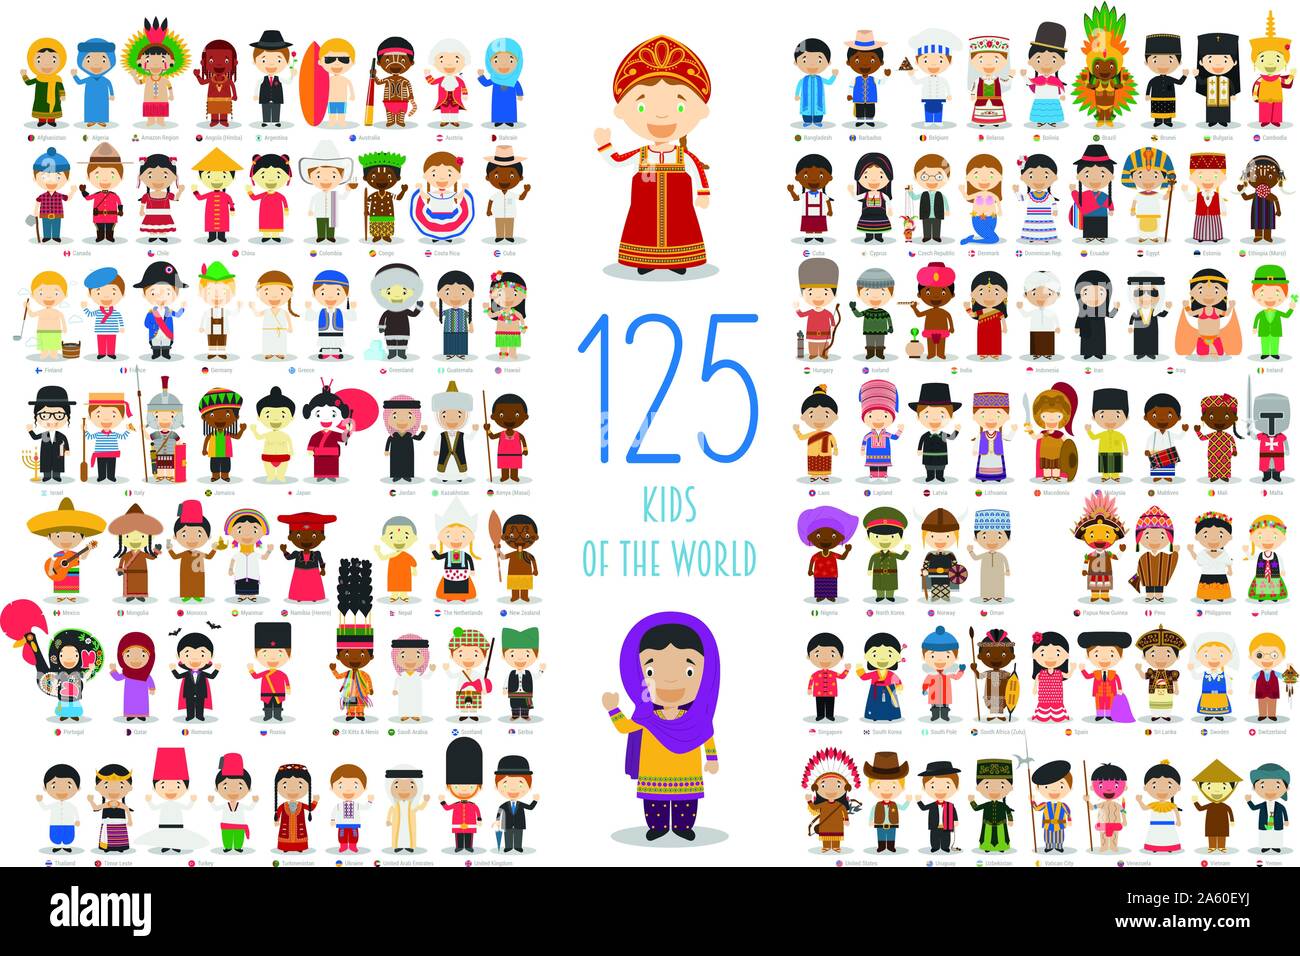 Los niños del mundo vector colección Characters: Conjunto de 125 niños de diferentes nacionalidades en el estilo de dibujos animados. Ilustración del Vector